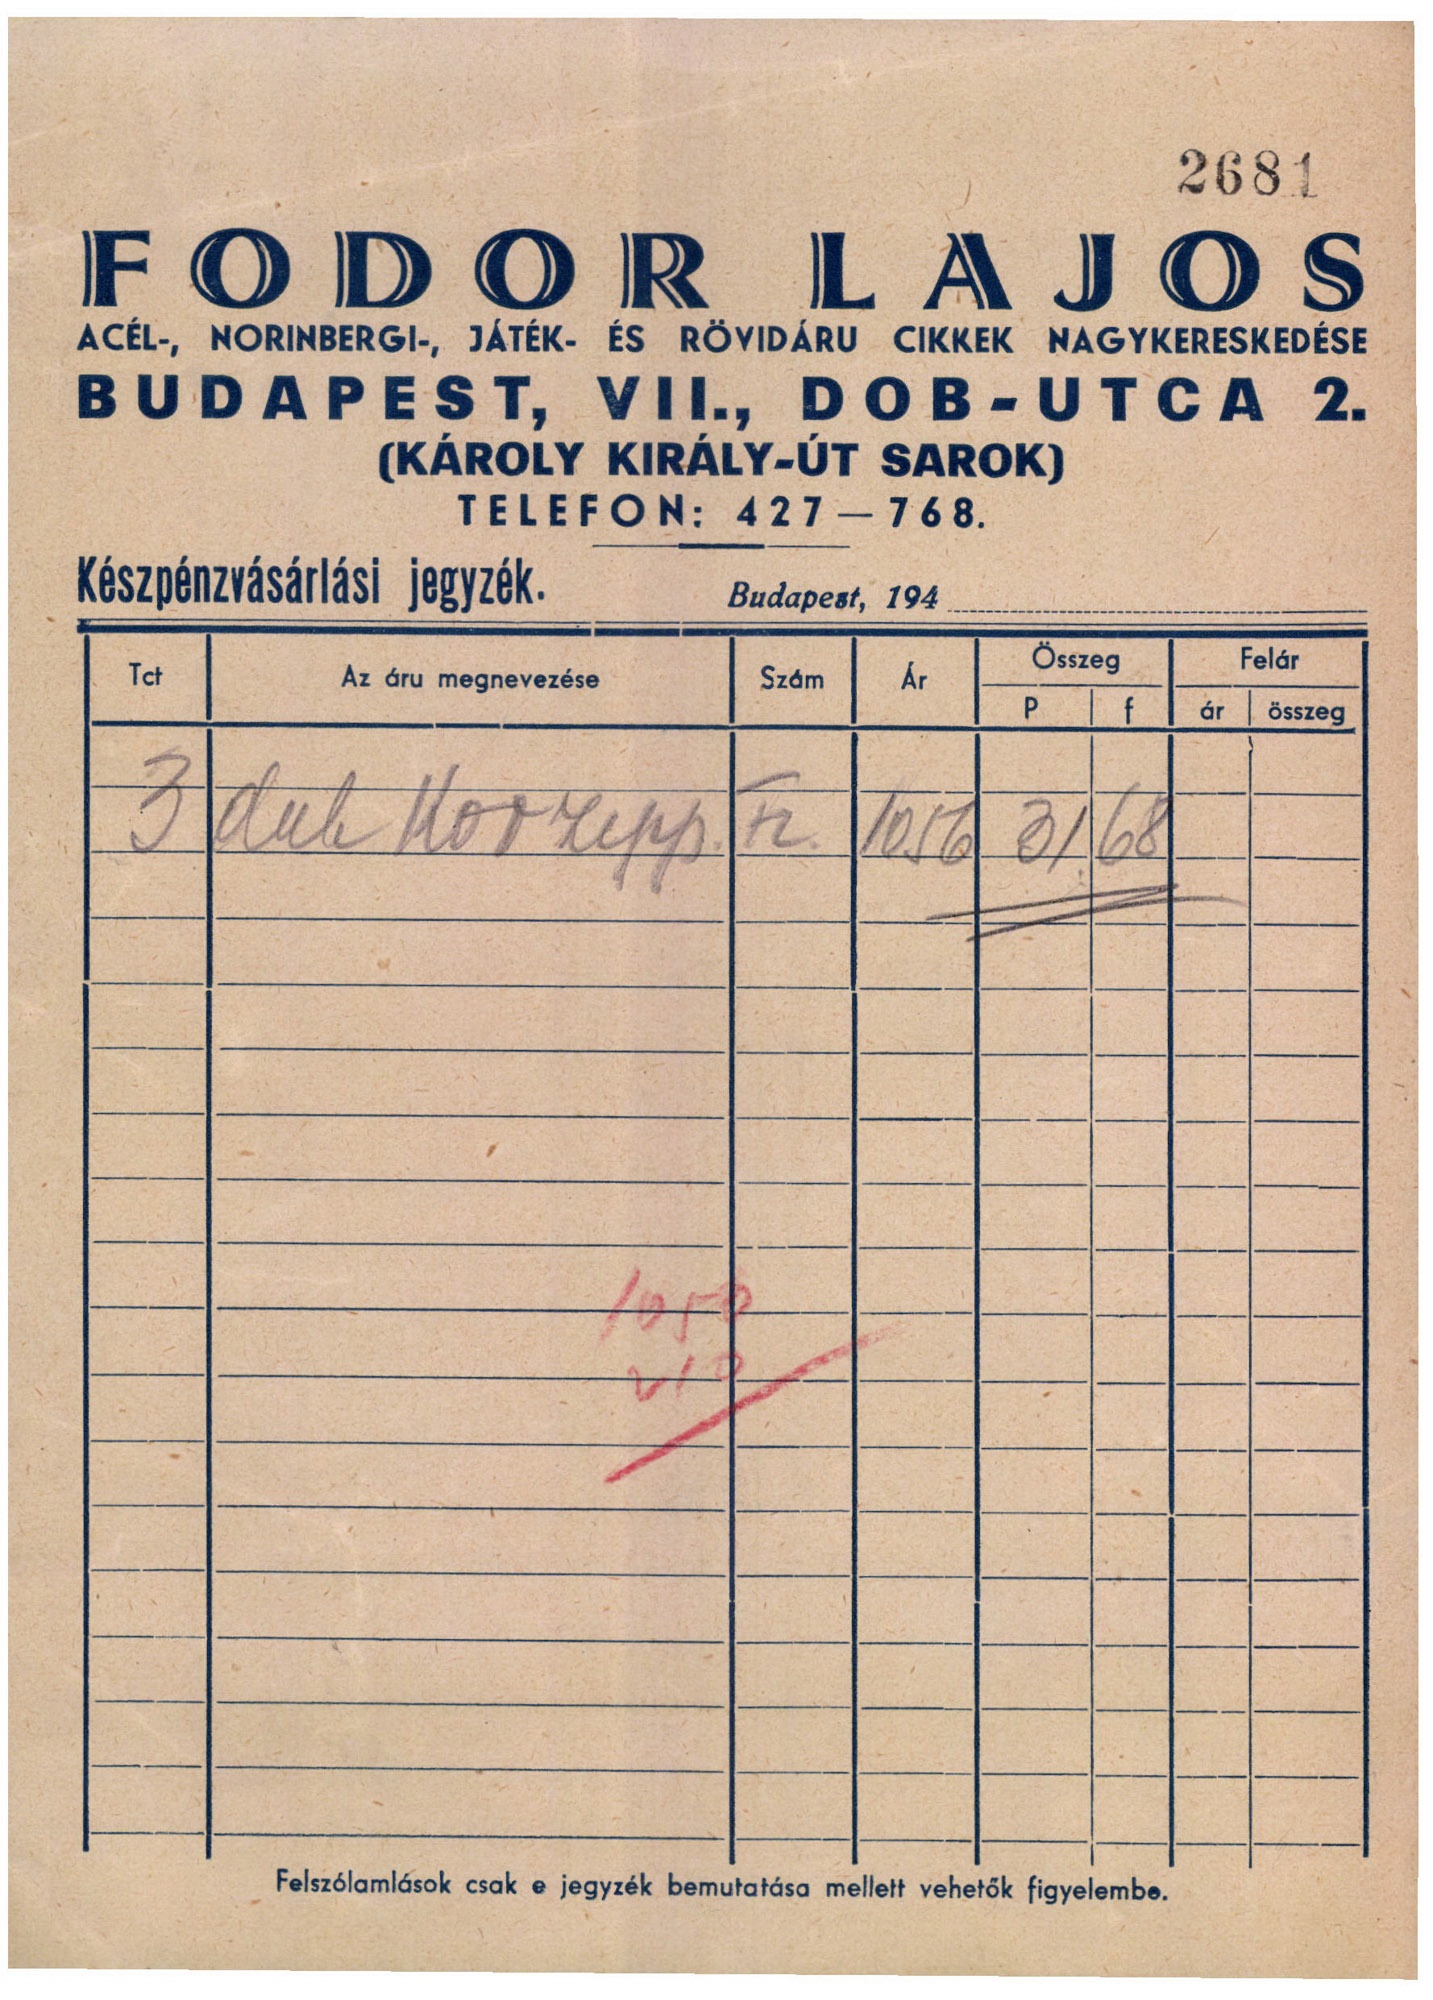 Fodor Lajos acél-, norinbergi-, játék- és rövidáru cikkek nagykereskedése (Magyar Kereskedelmi és Vendéglátóipari Múzeum CC BY-NC-SA)